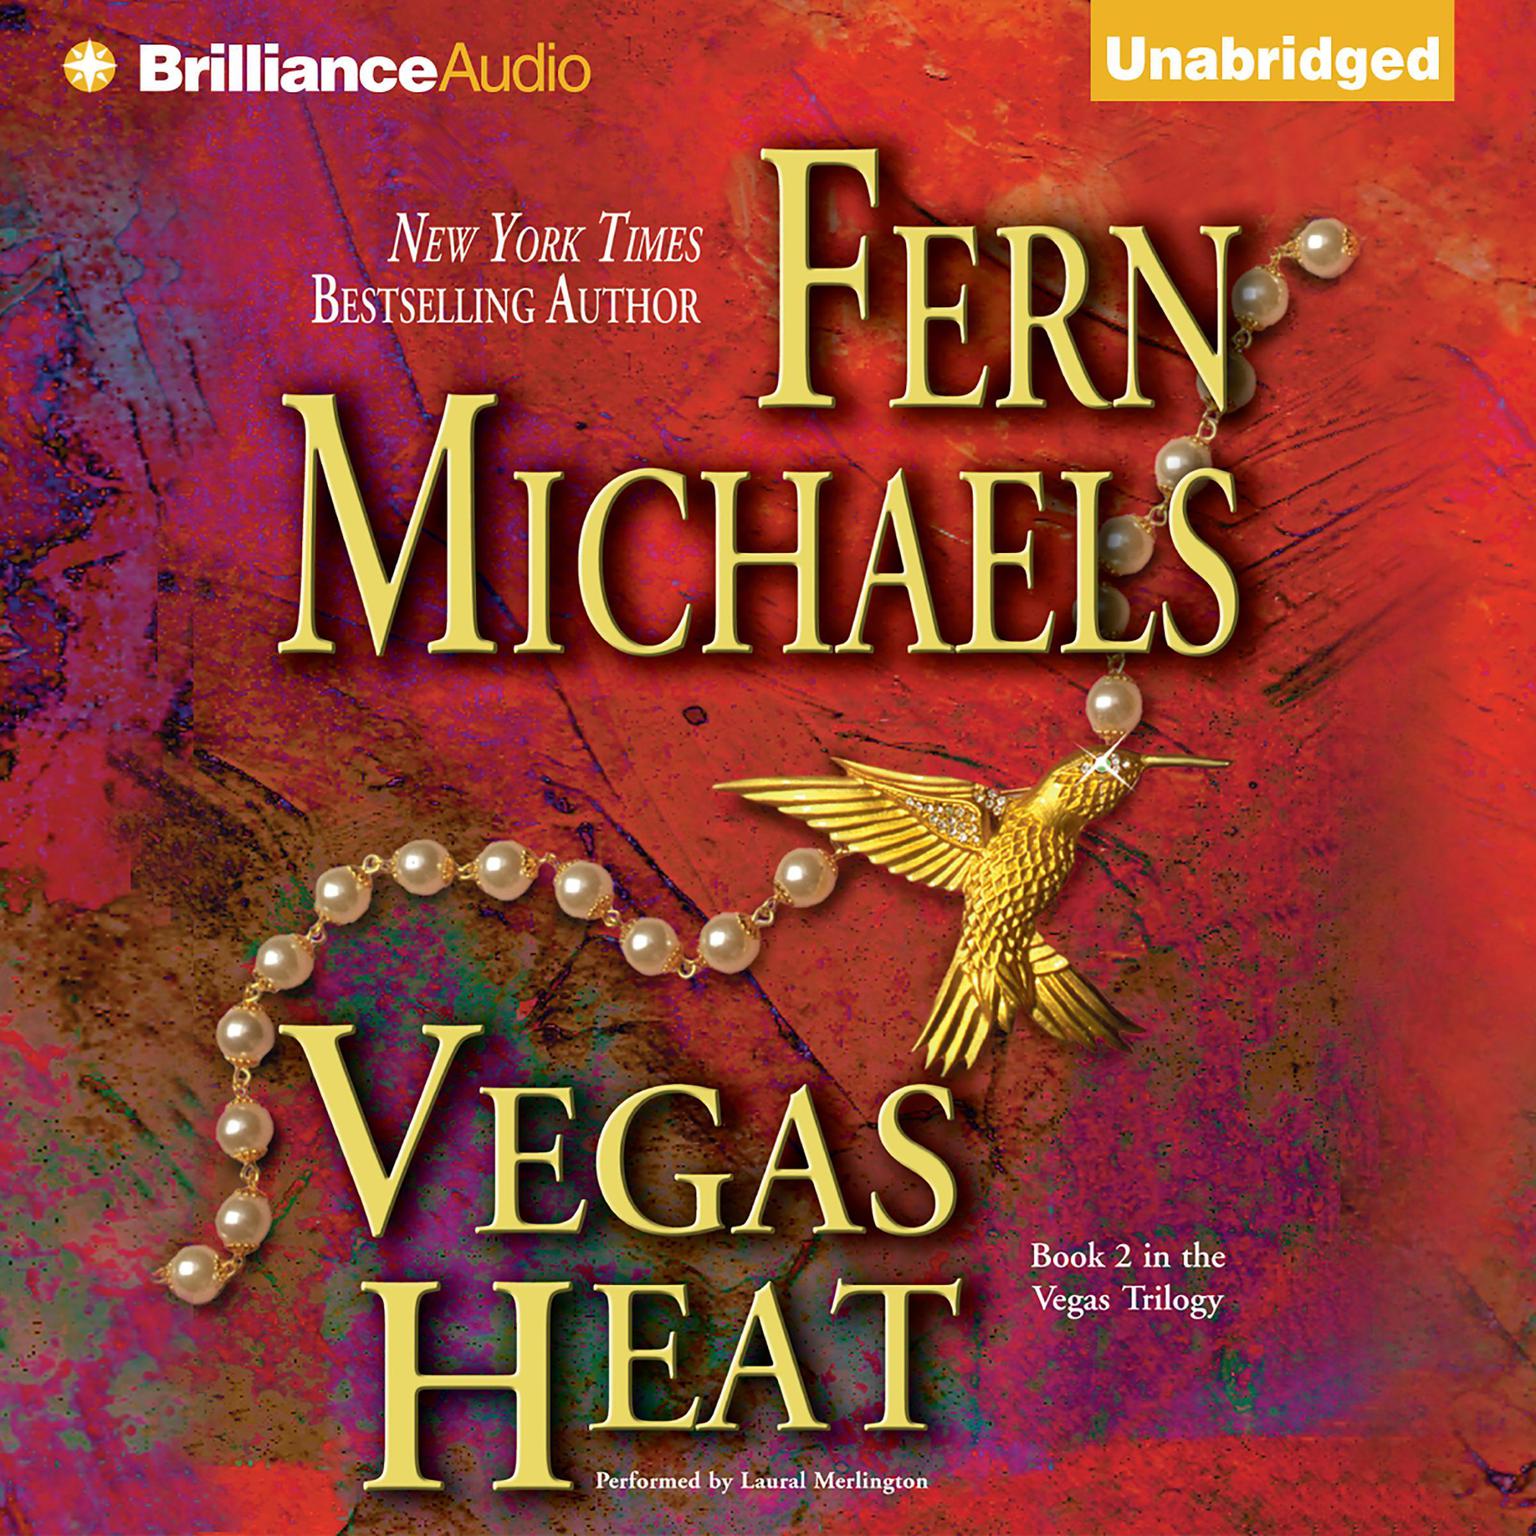 Vegas Heat Audiobook, by Fern Michaels